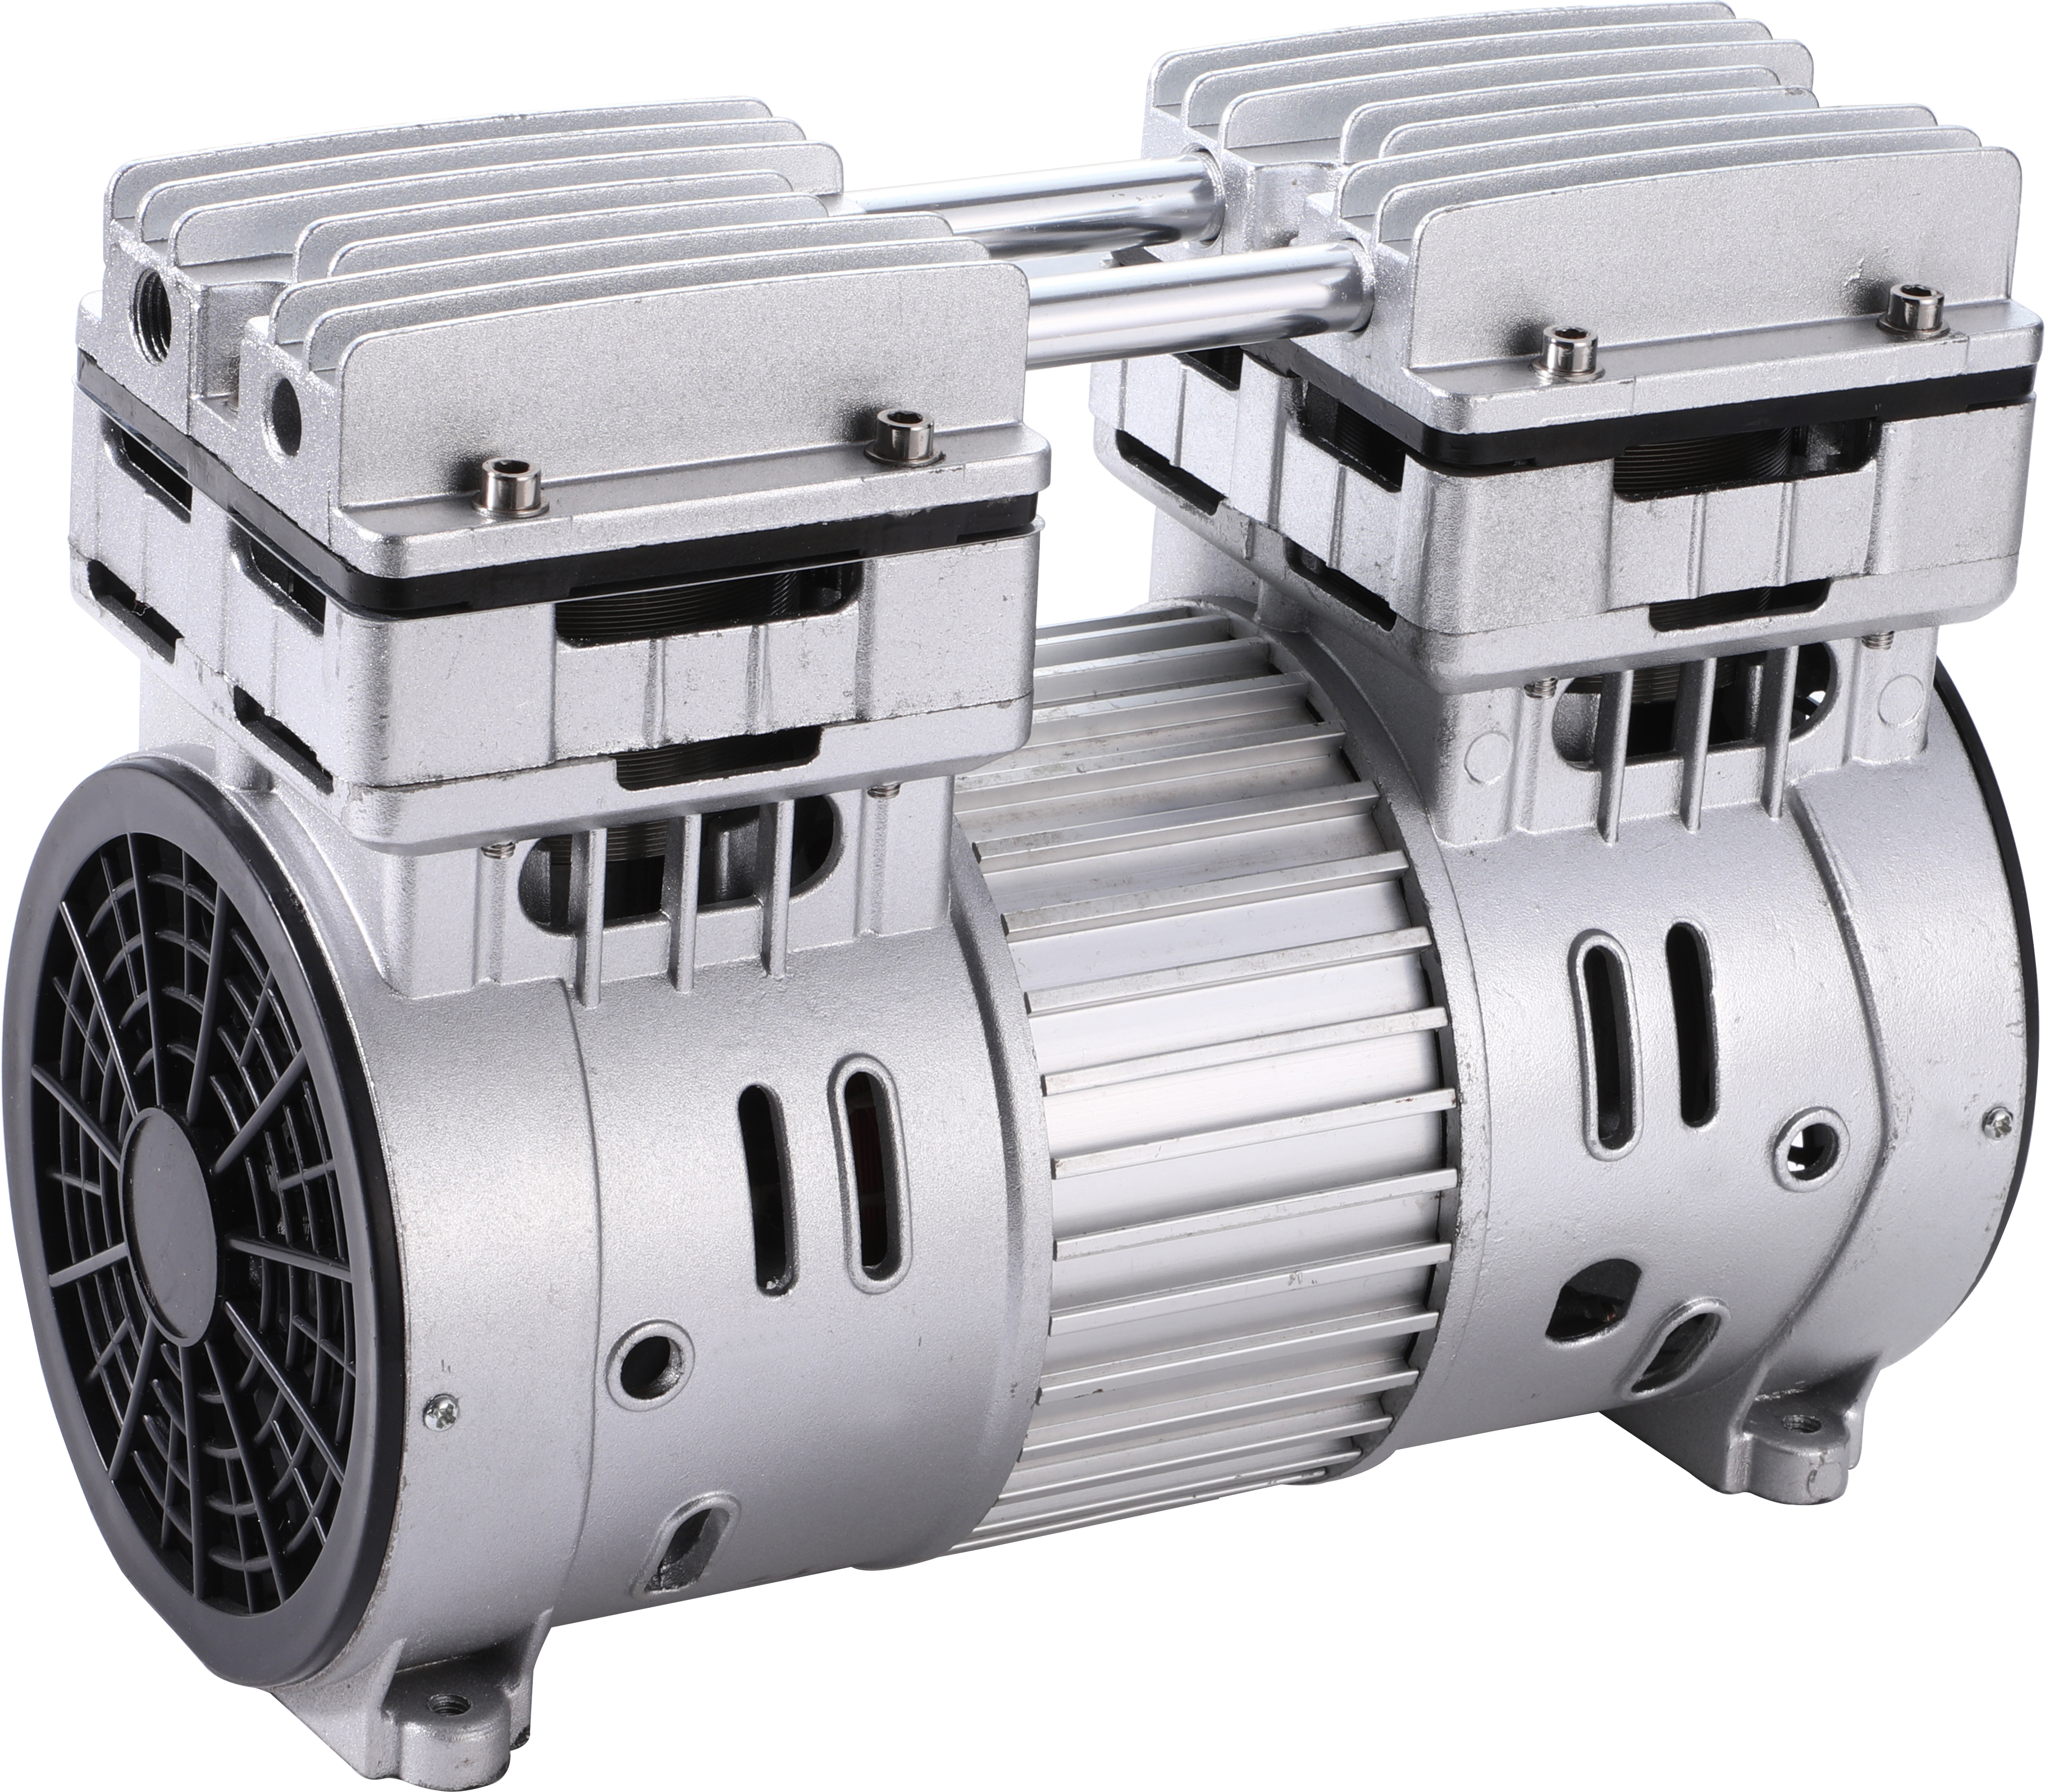 High Capacity Air Compressor Pump Head Free Air Compressor Pump yeMedica